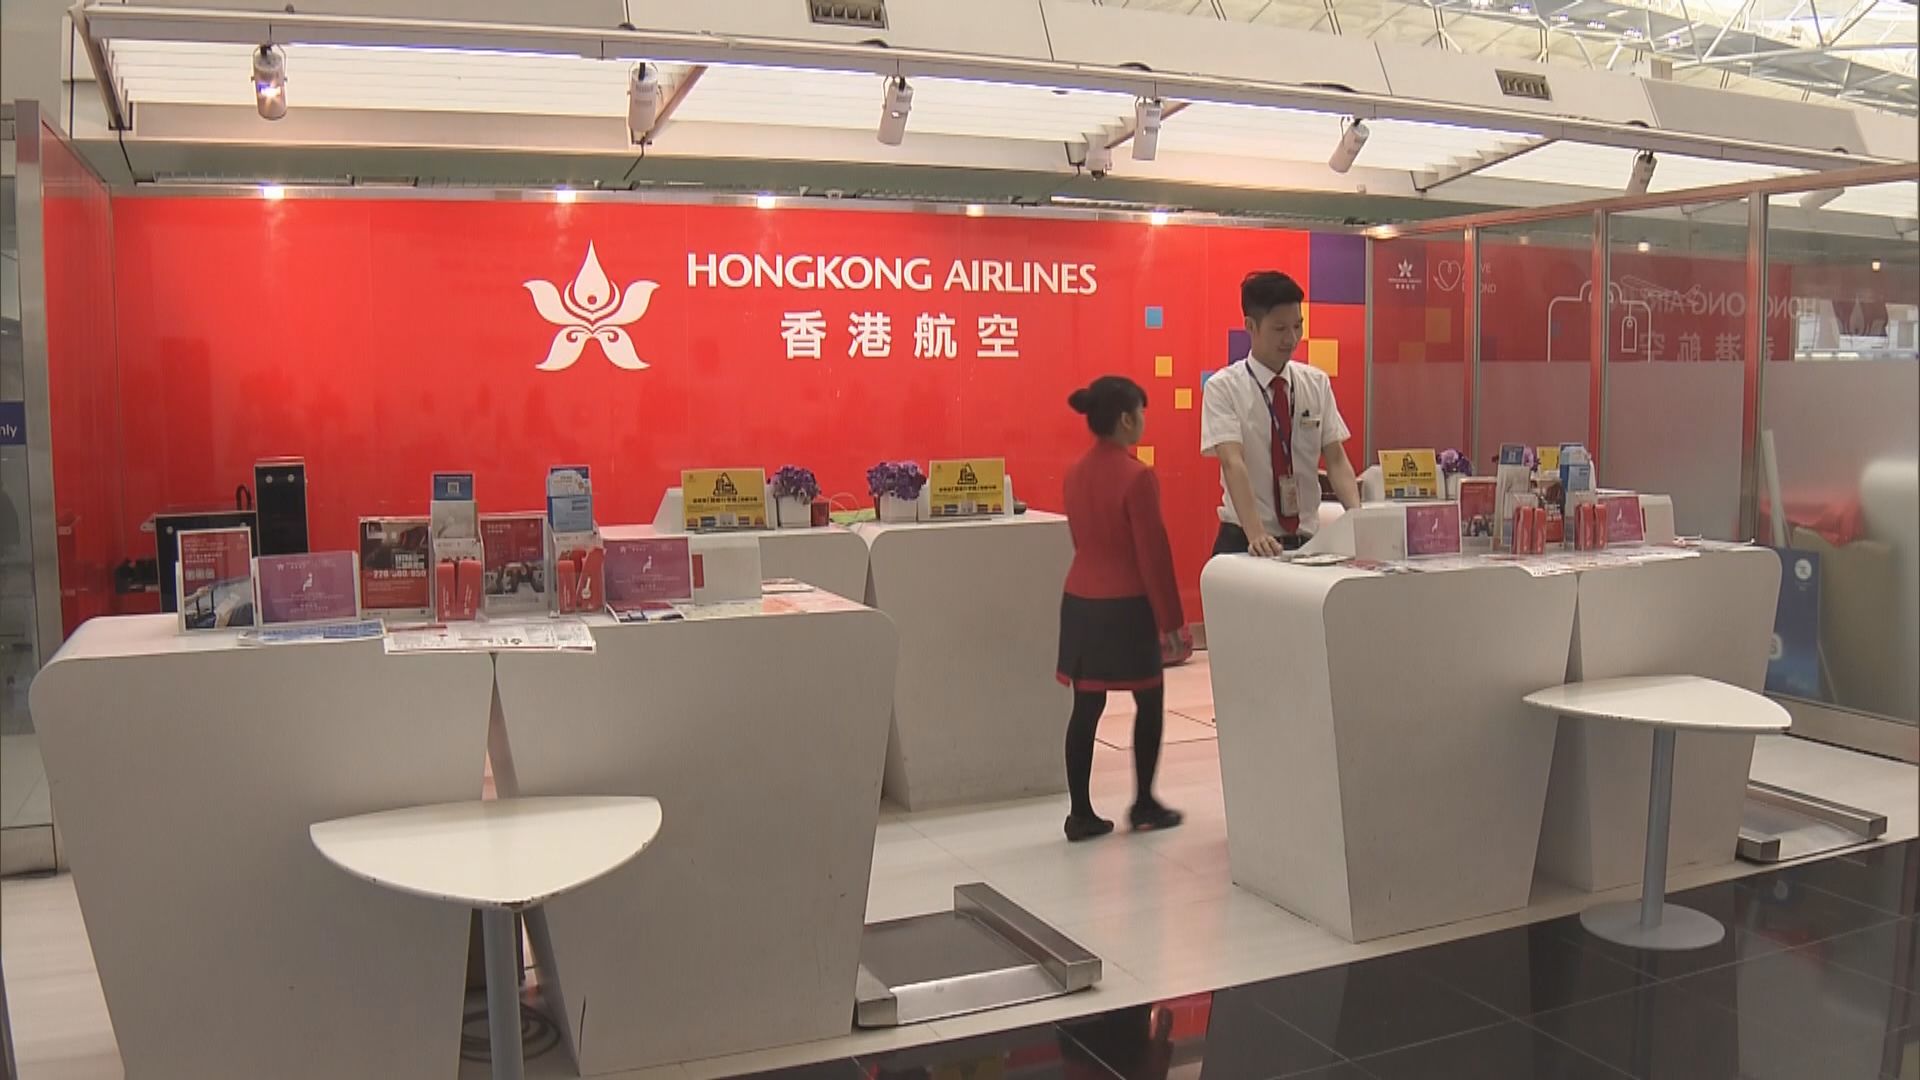 空運牌照局要求香港航空立即改善財政